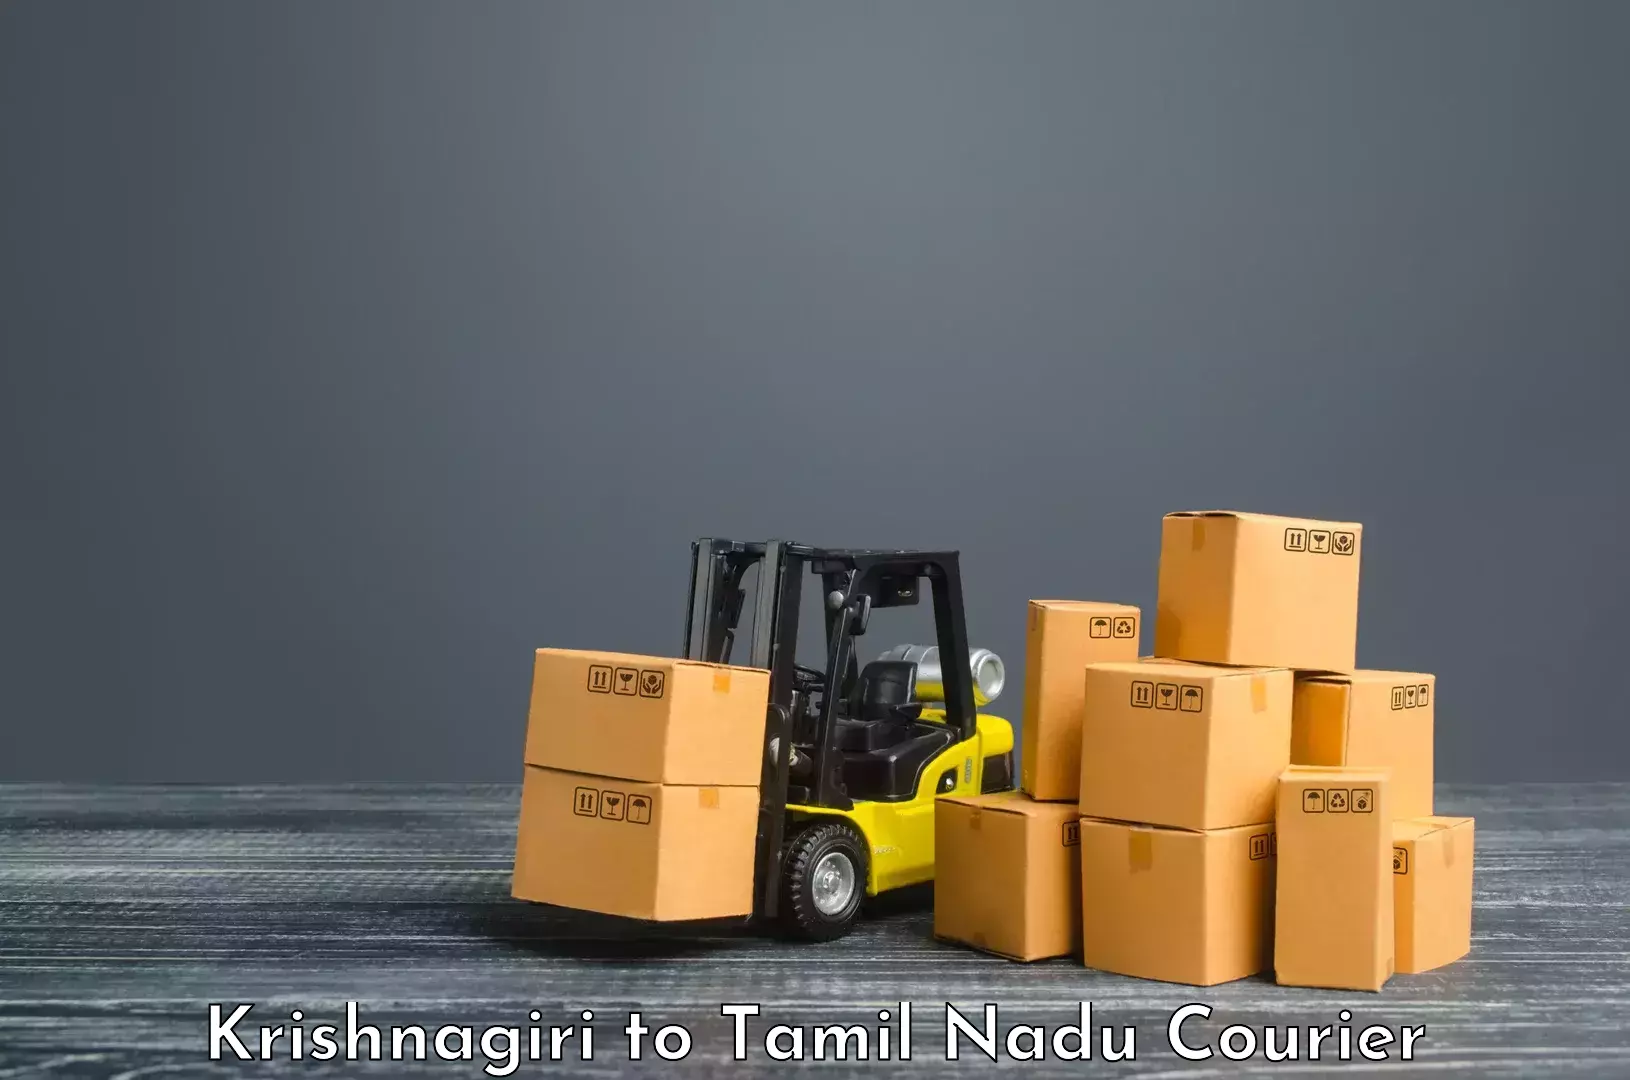 Full-service courier options Krishnagiri to Tamil Nadu